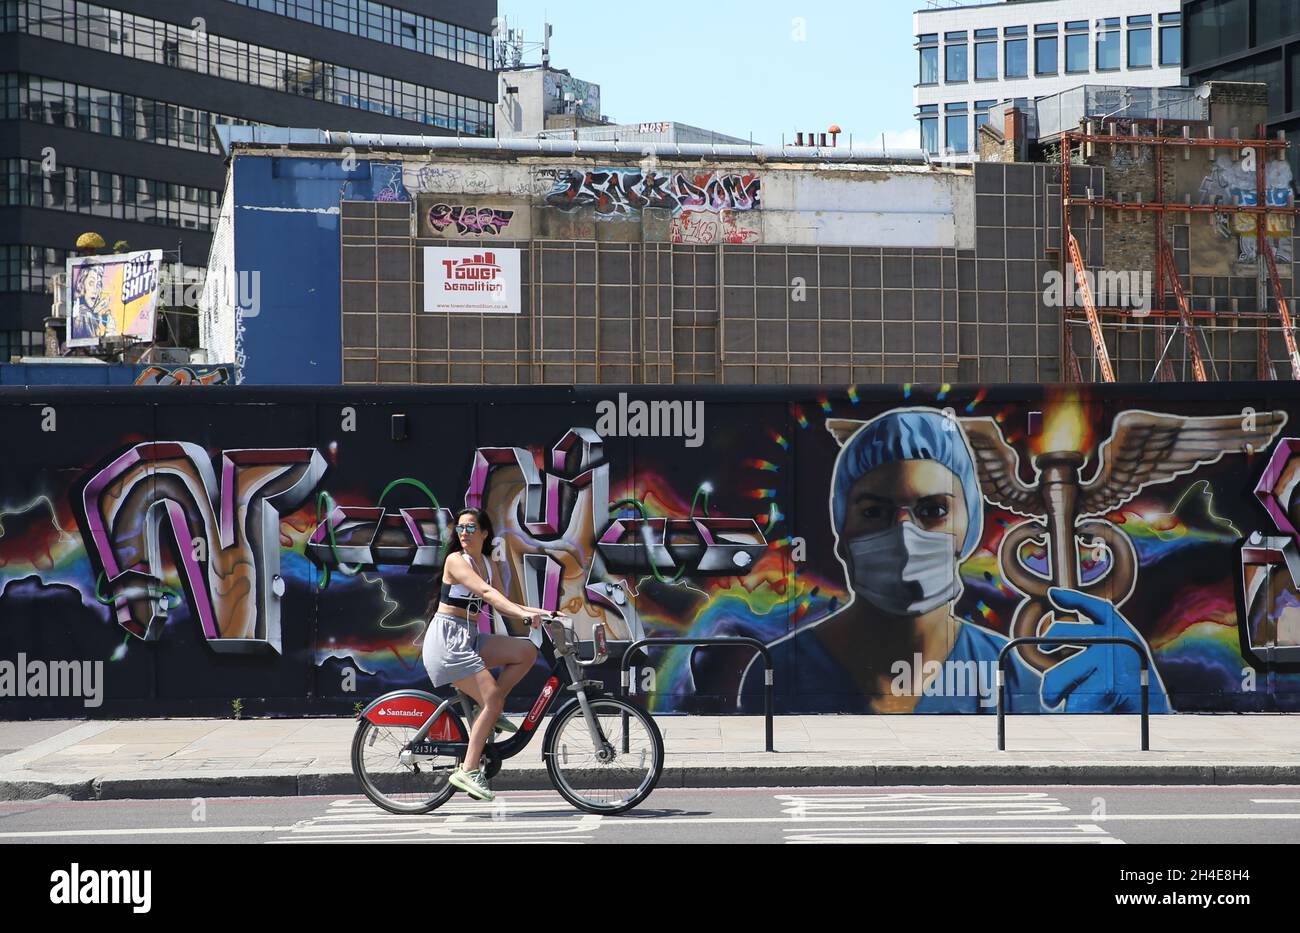 Ein Radfahrer fährt an einem Graffiti vorbei, auf dem ein Gesundheitshelfer mit voller persönlicher Schutzausrüstung in der Nähe von Shoreditch im Osten Londons abgebildet ist, während die Regierung beginnt, einige Sperrmaßnahmen in England zu lockern. Bilddatum: Montag, 1. Juni 2020. Stockfoto